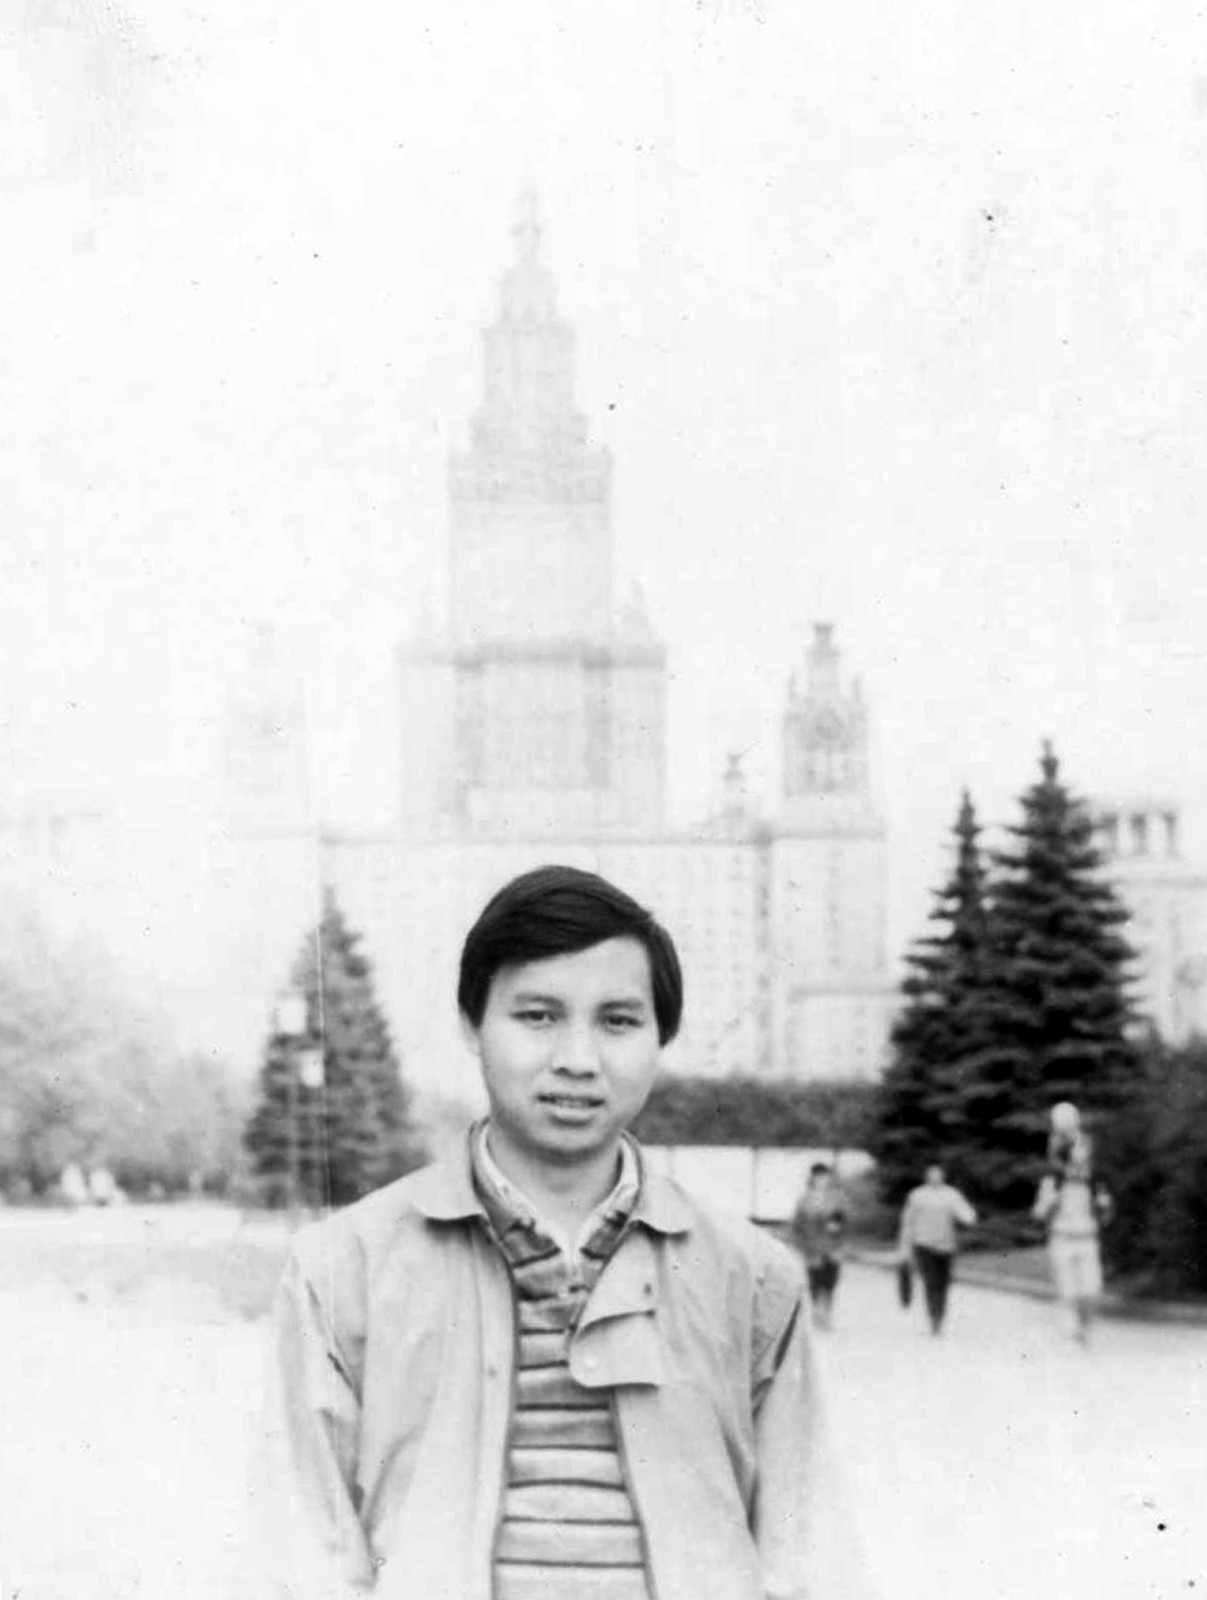 Đại sứ Ngô Đức Mạnh thời sinh viên, trước tượng đài Lomonoxop ở trường Đại học Quốc gia Moscow (MGU).